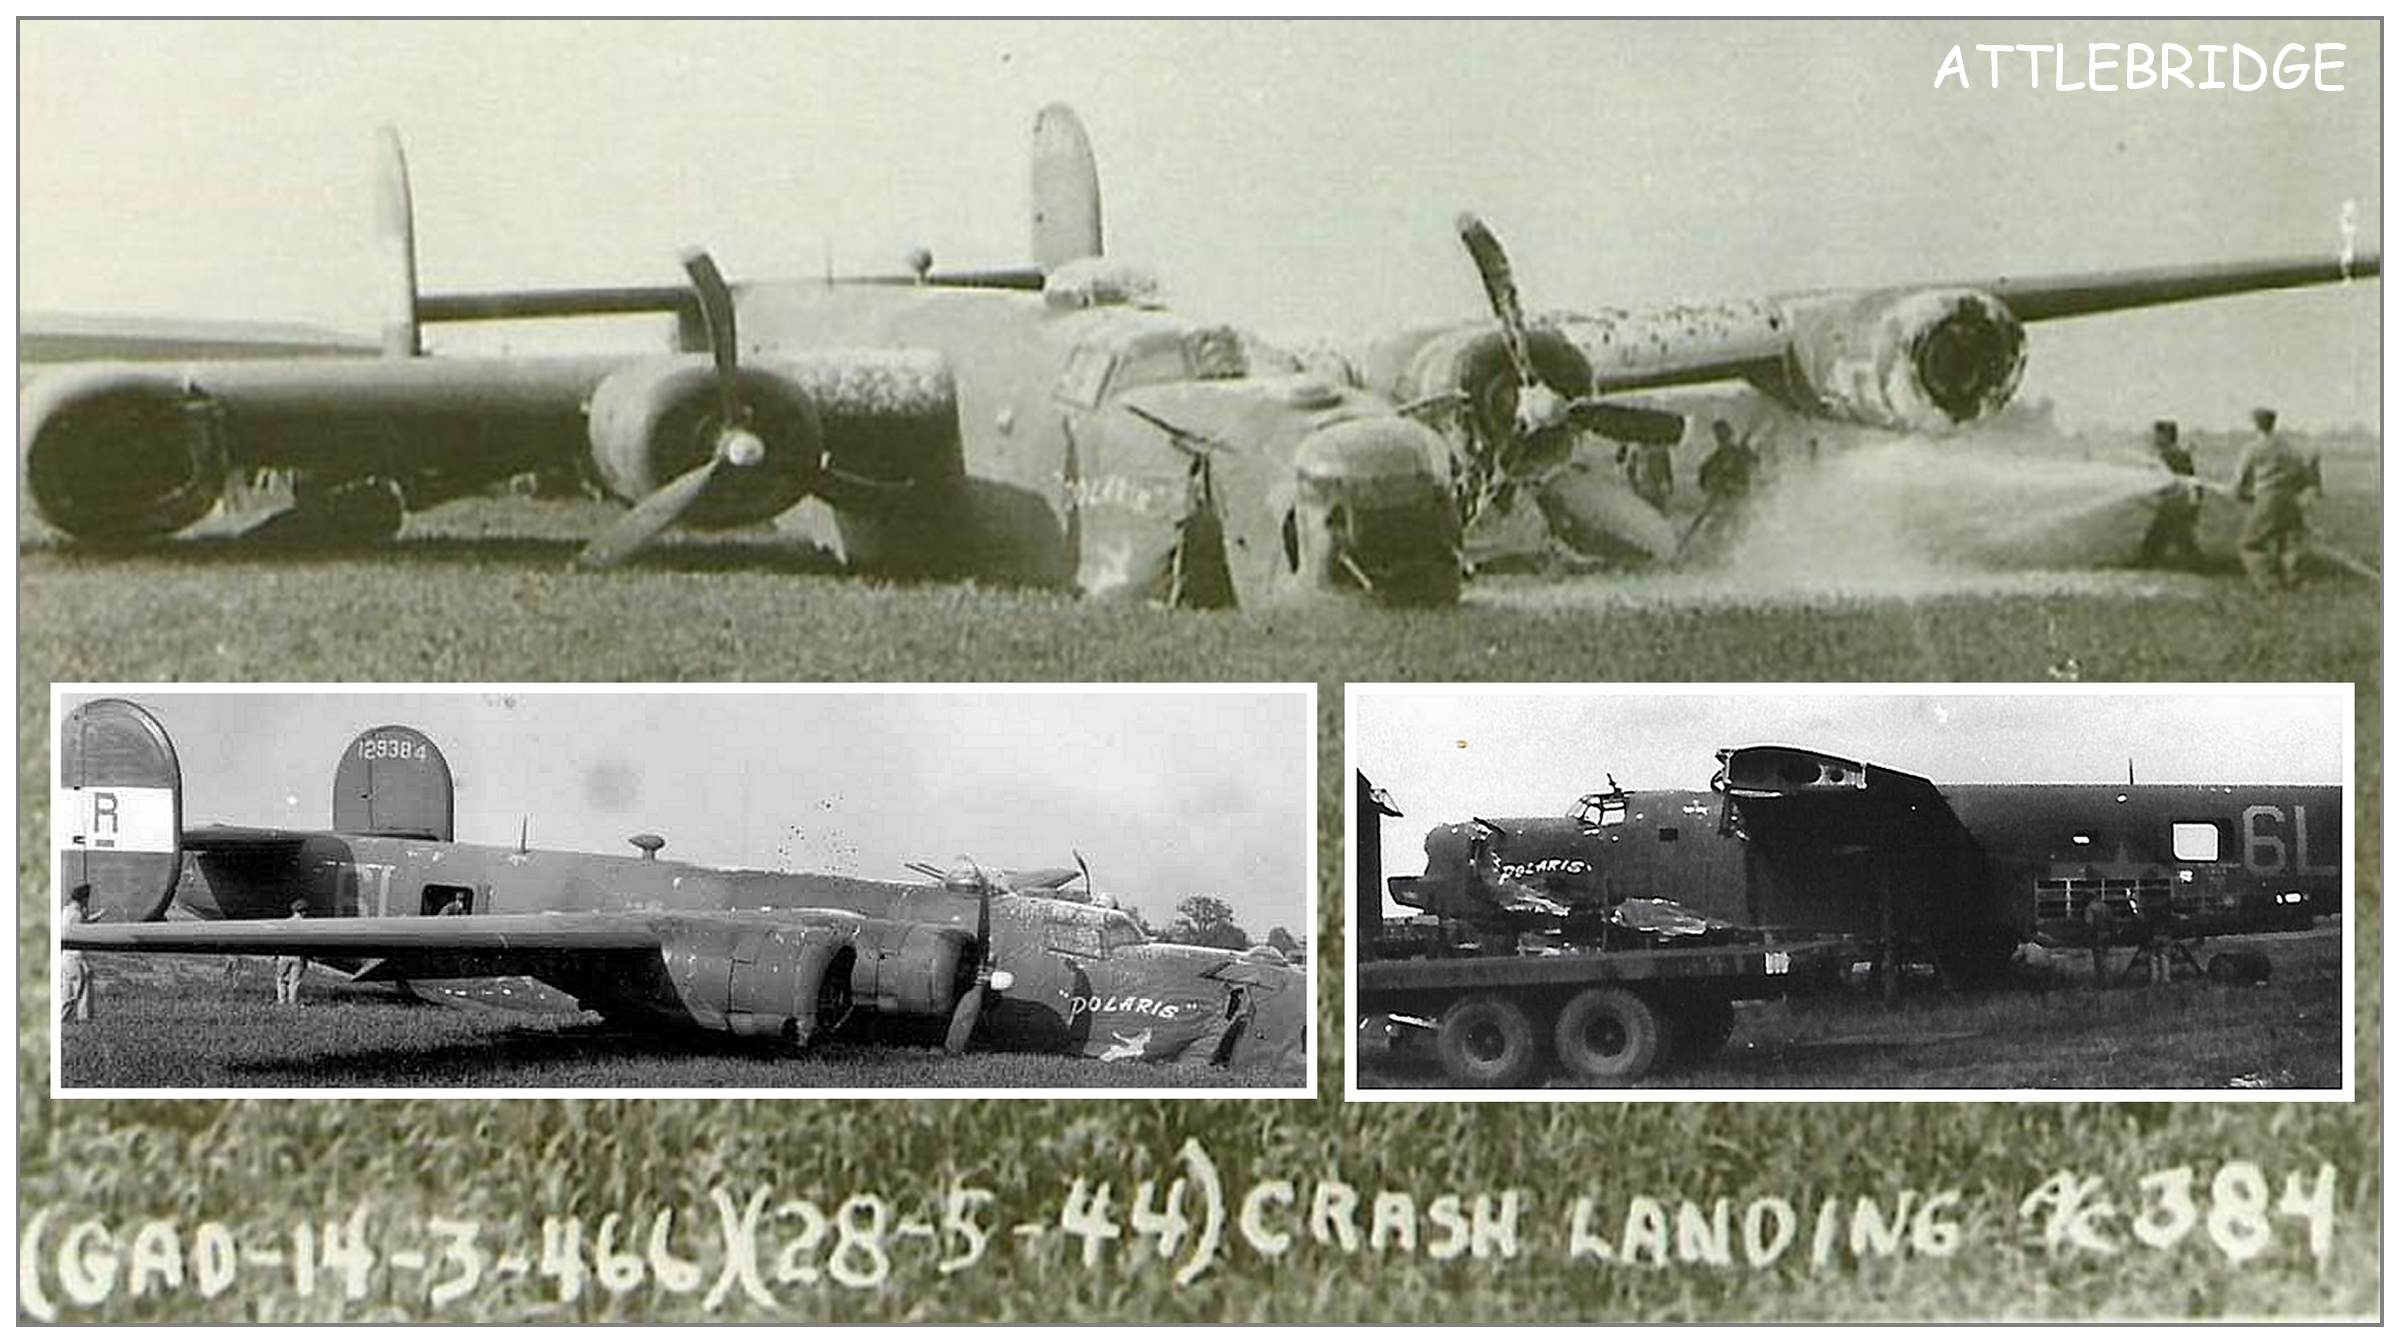 28 May 1944- Crash landing 'Polaris', Attlebridge